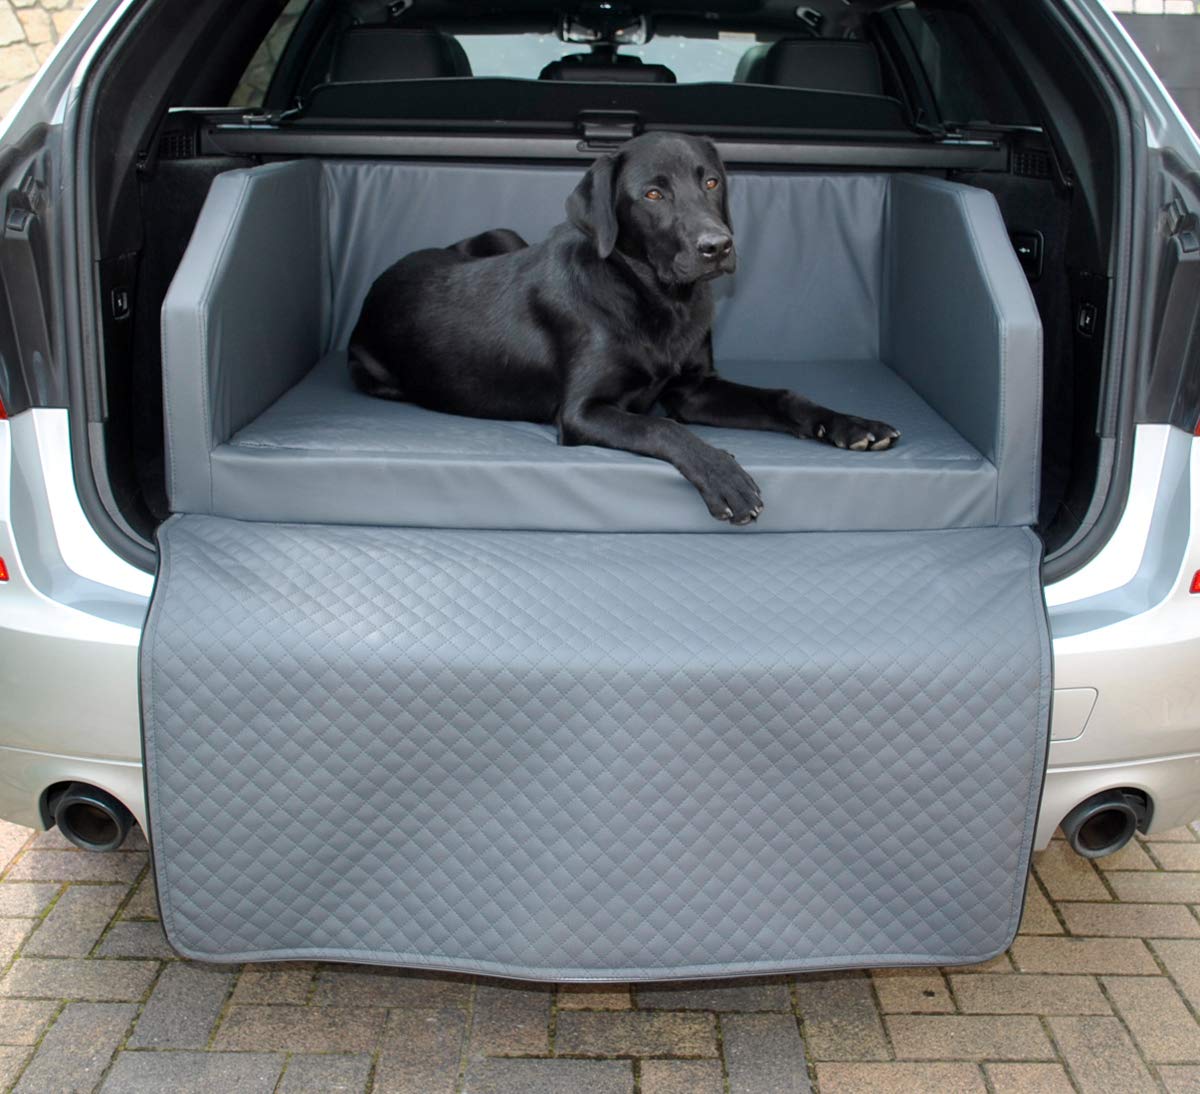 Mayaadi Home Premium Hundebett - 110 x 90 cm - Hochwertiger Autositz für Deinen Hund - Autohundebett mit Schutzdecke - Kofferraum Bett Hunde - Kunstleder - Travel - Grau - XL